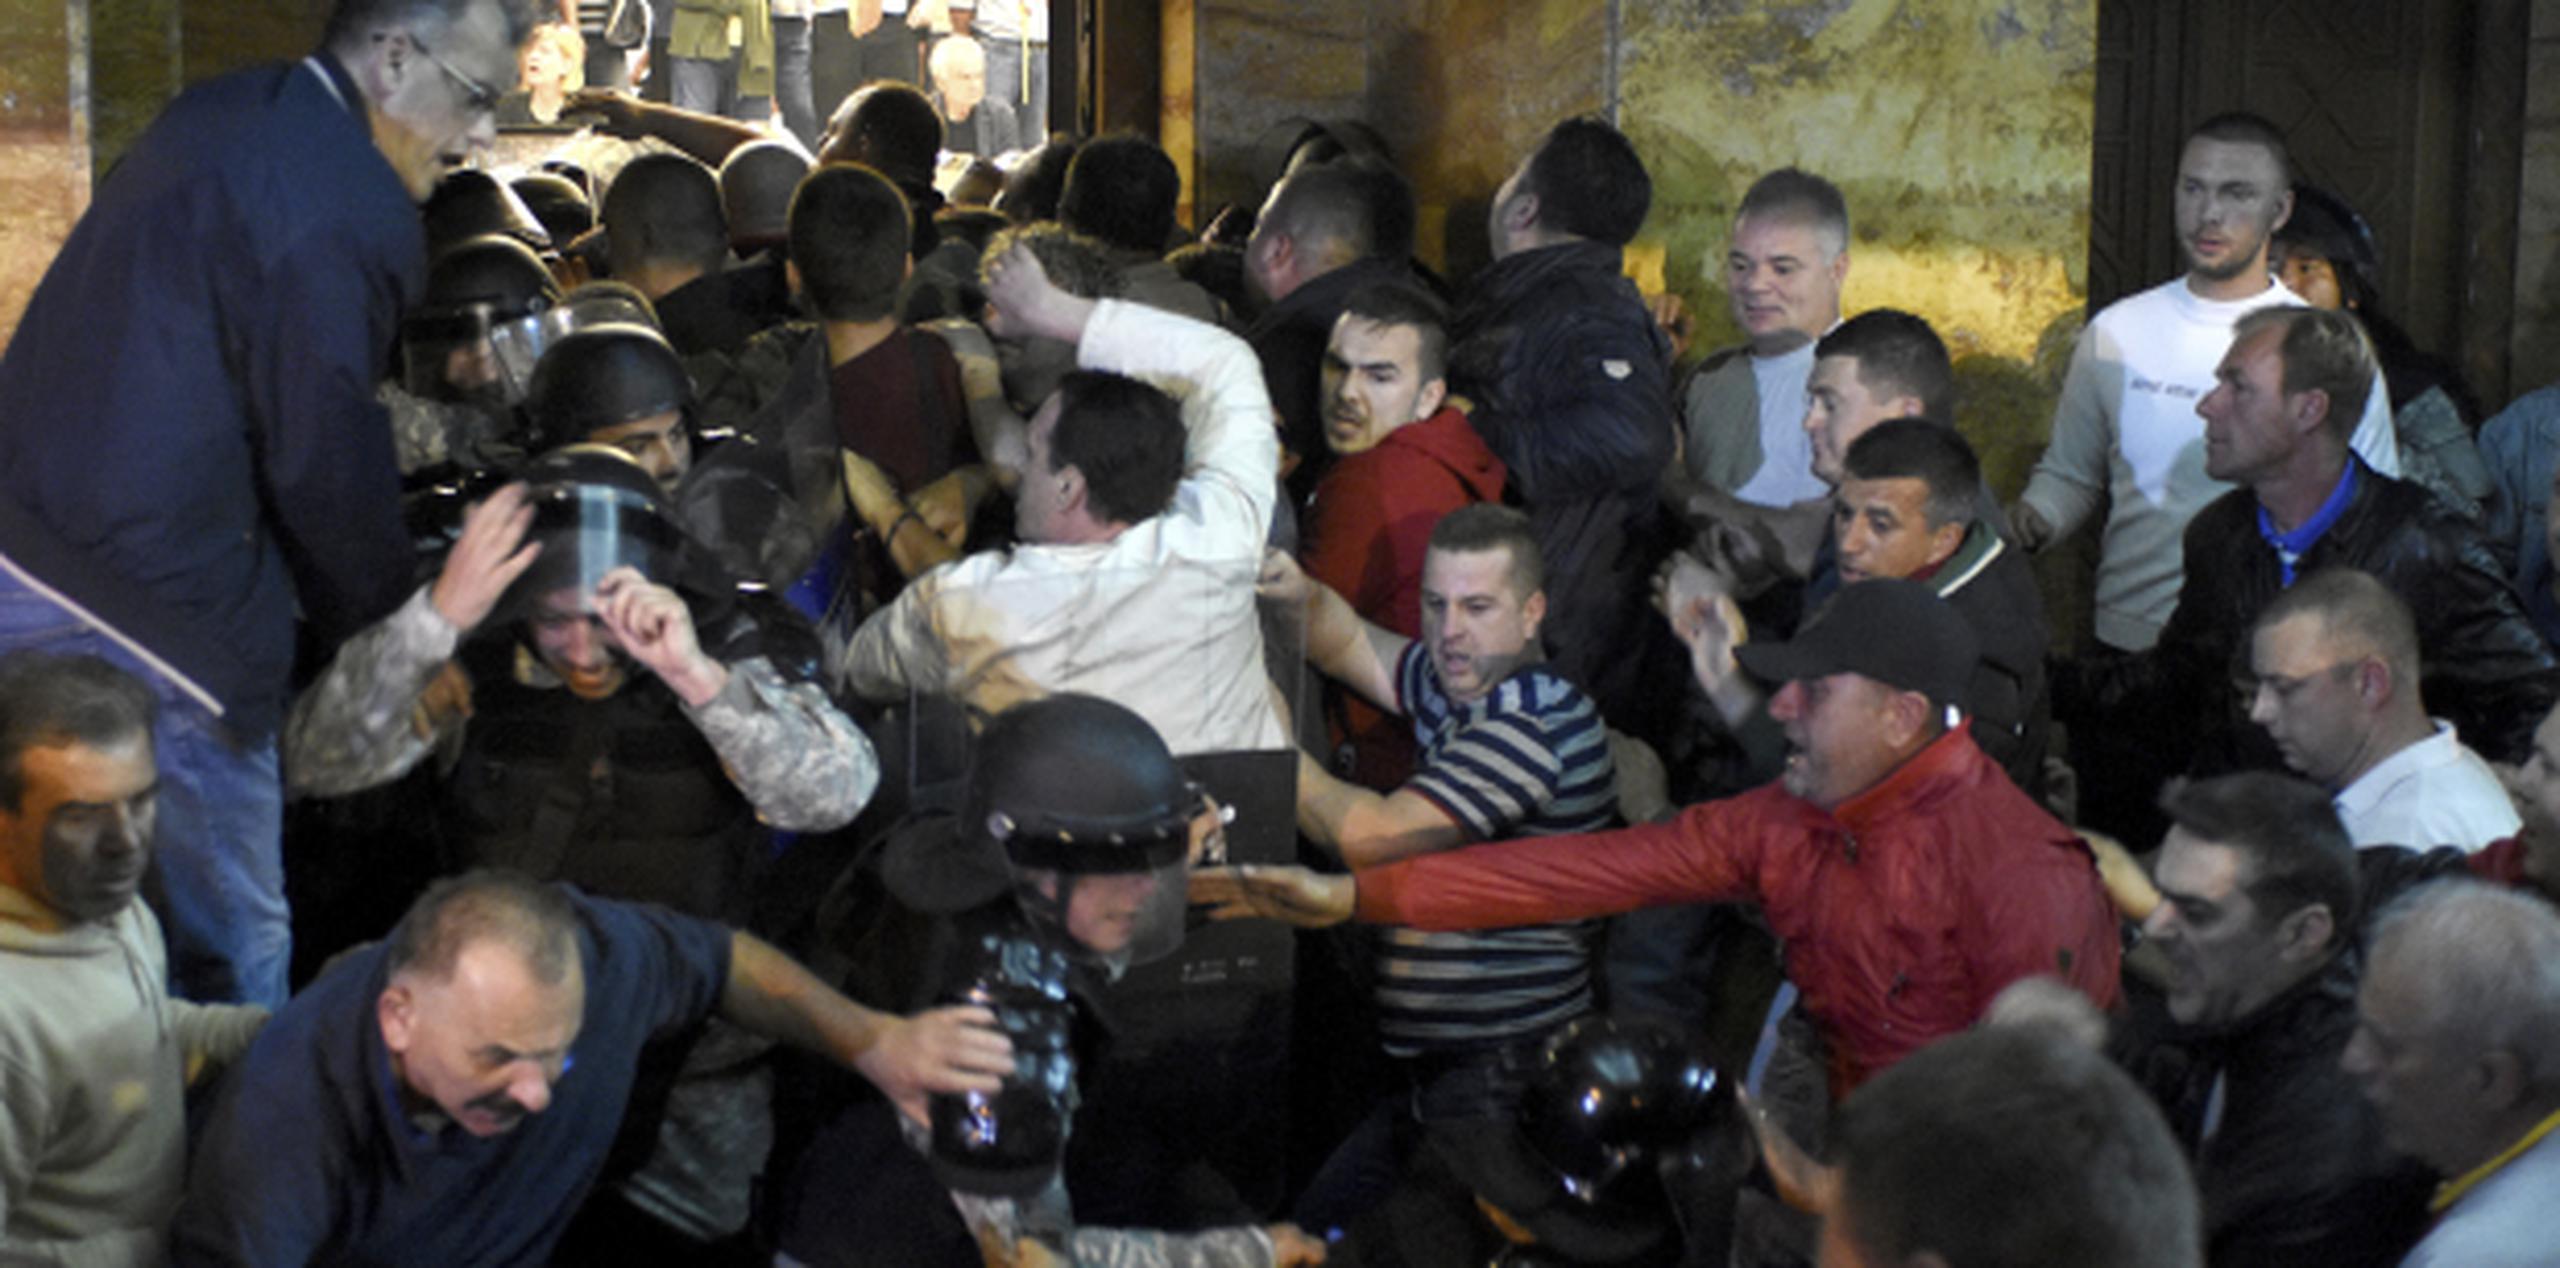 Los manifestantes lograron entrar al Parlamento y comenzaron a agredir a los legisladores. (AP/Dragan Perkovski)
